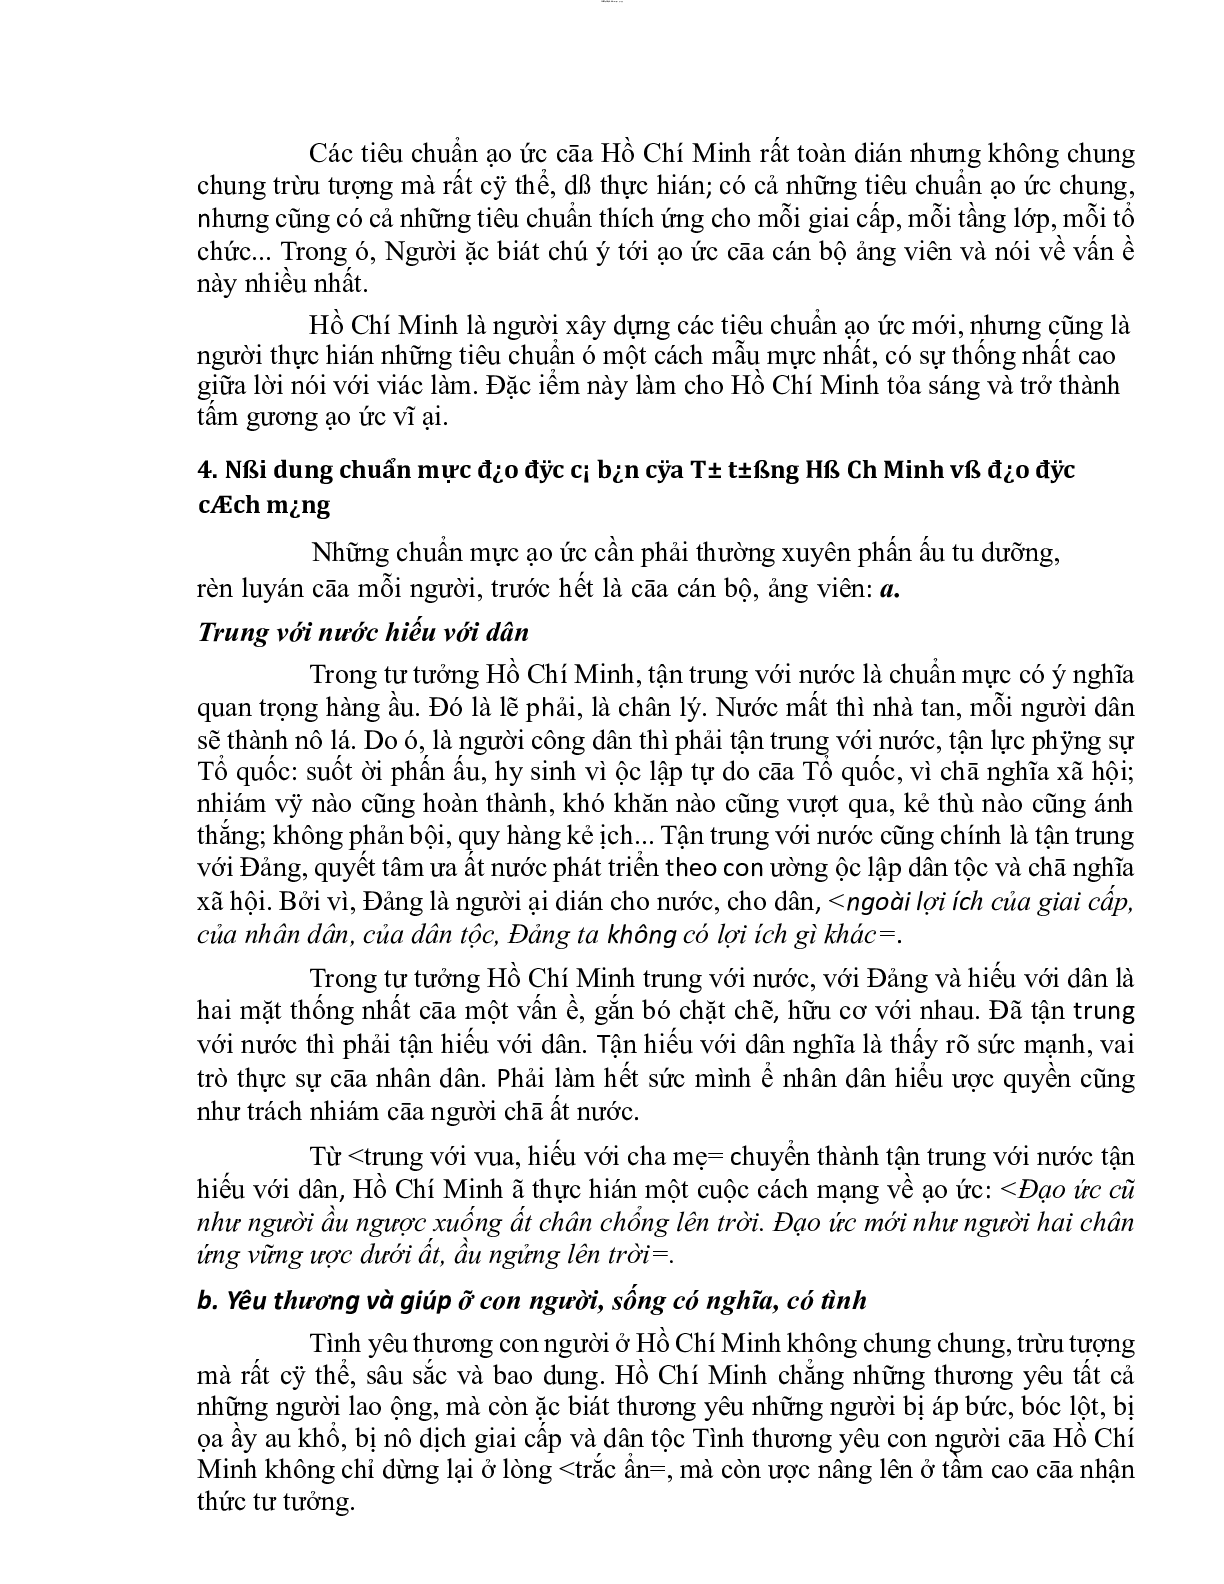 Mẫu Tiểu luận Tư tưởng Hồ Chí Minh về đạo đức | PDF | Đại học Thương Mại (trang 8)